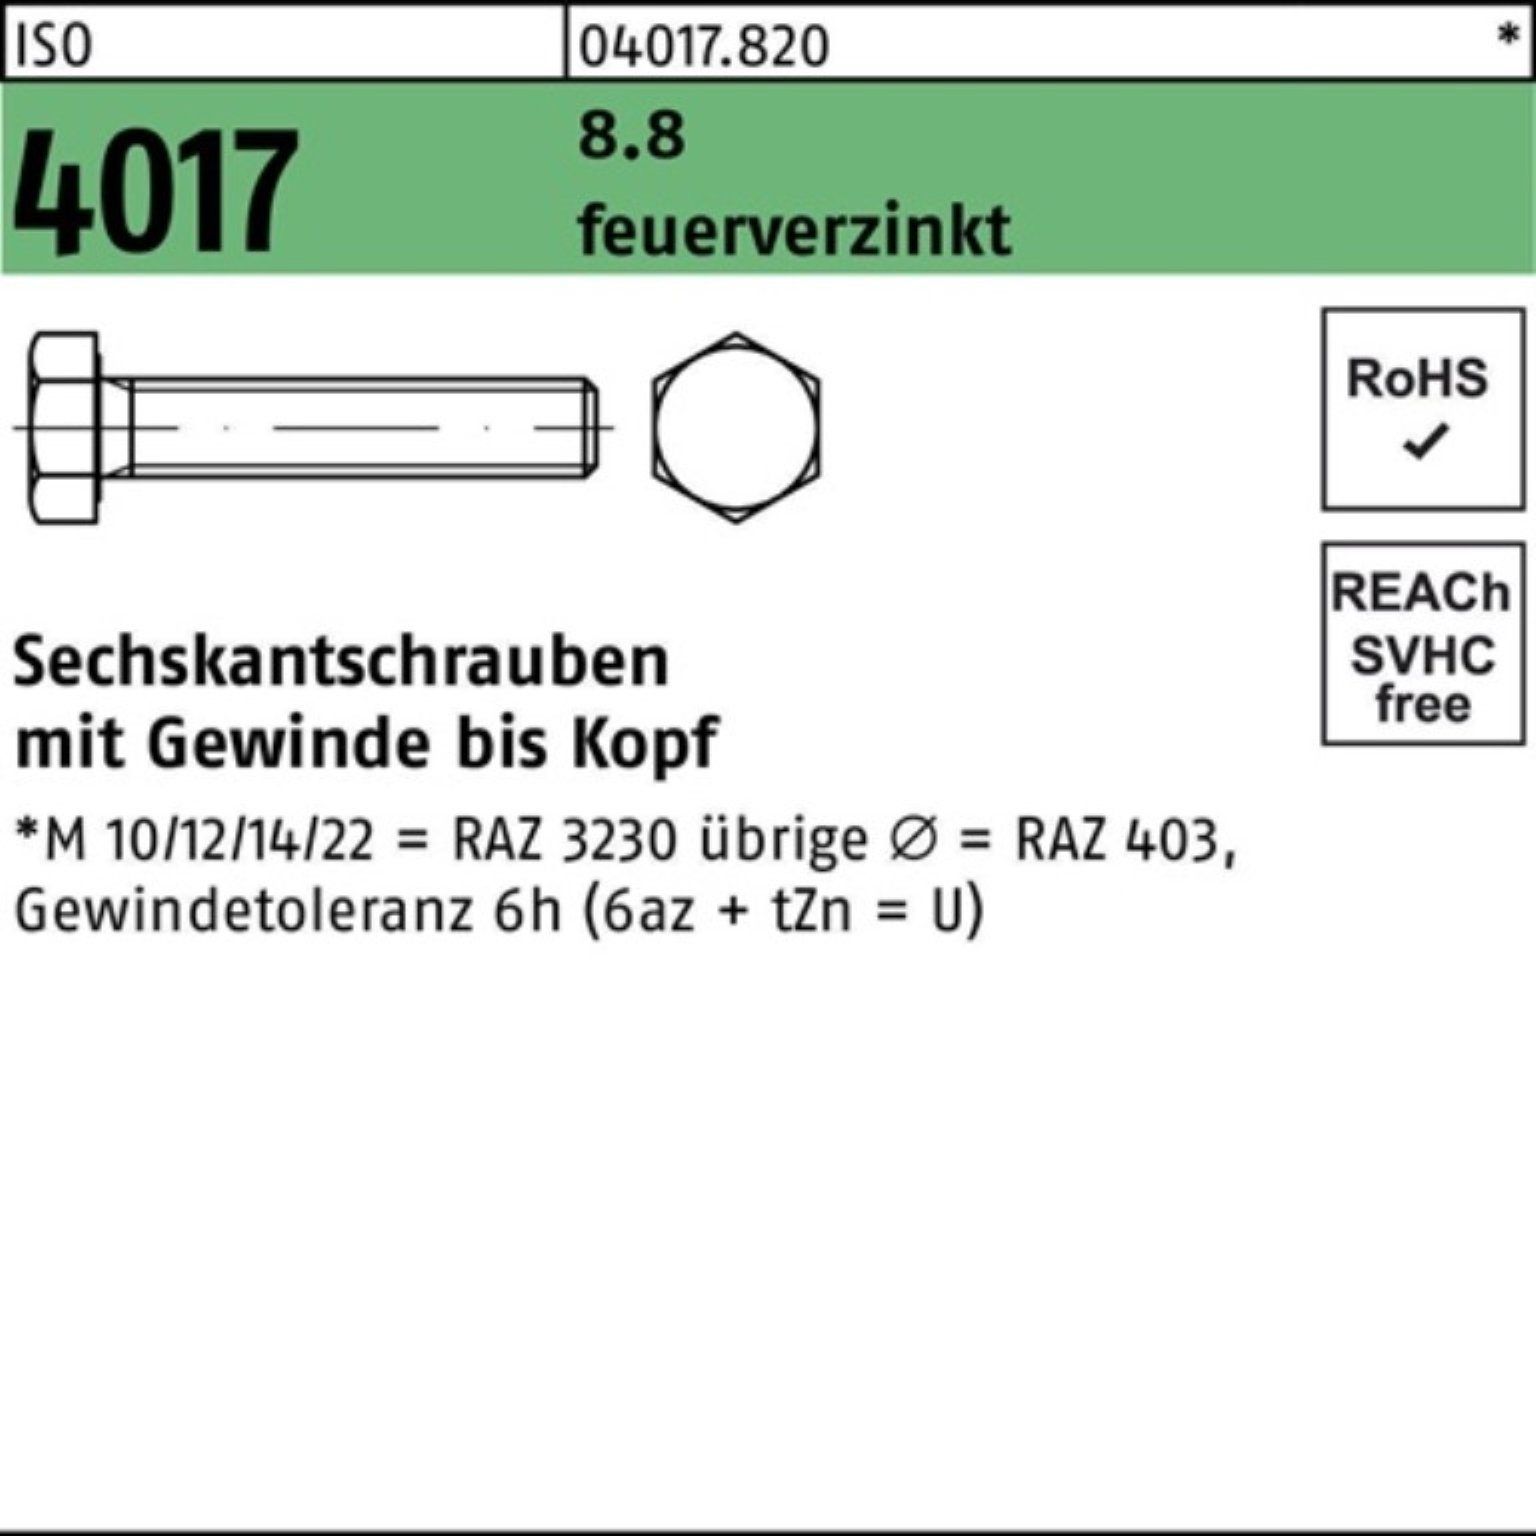 Bufab Sechskantschraube 100er Pack Sechskantschraube ISO 4017 VG M10x 100 8.8 feuerverz. 100 S